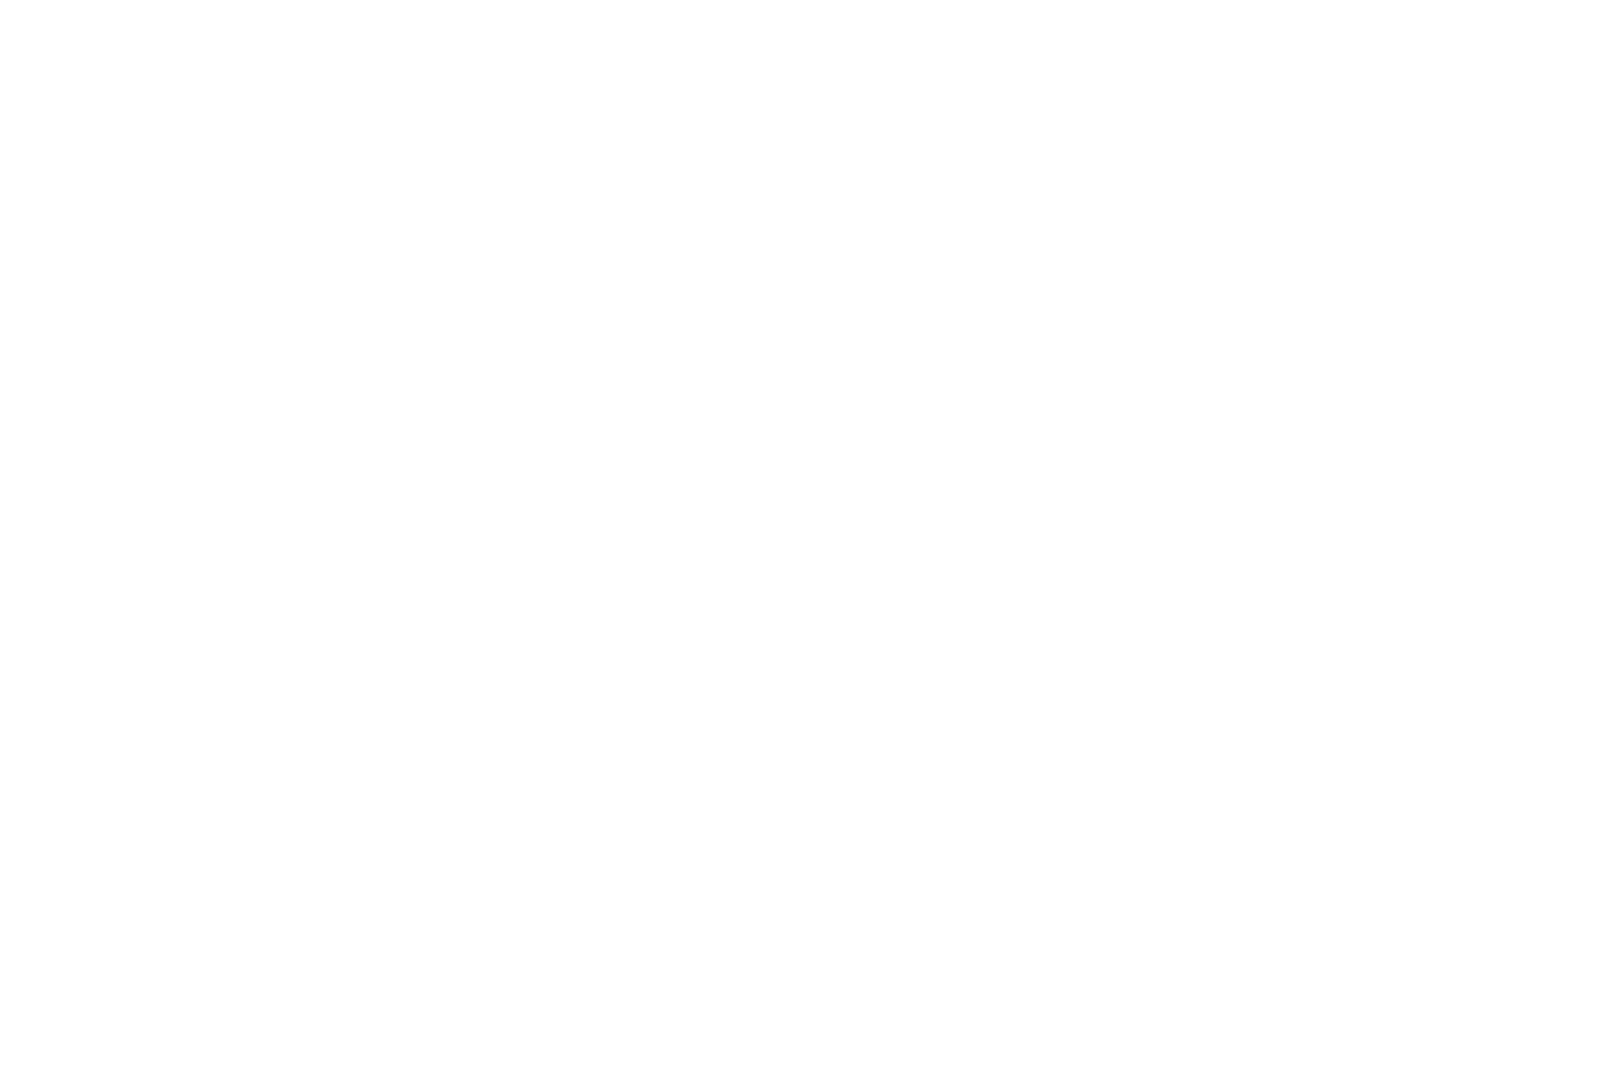 Ненецкая девушка ставит сети на белых куропаток, зимующих рядом со стойбищем ненцев оленеводов на Ямале в тундре Полярного Урала. Машкова Елена, Elena Mashkova — фотограф